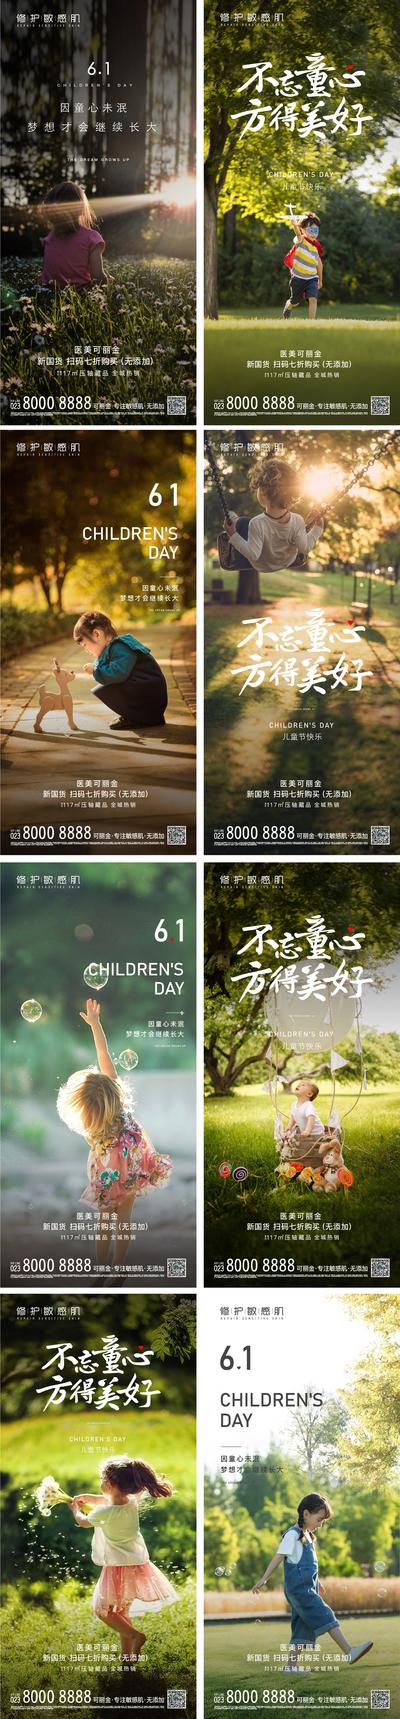 南门网 海报 房地产 公历节日 六一 儿童节 公园 小孩 自然